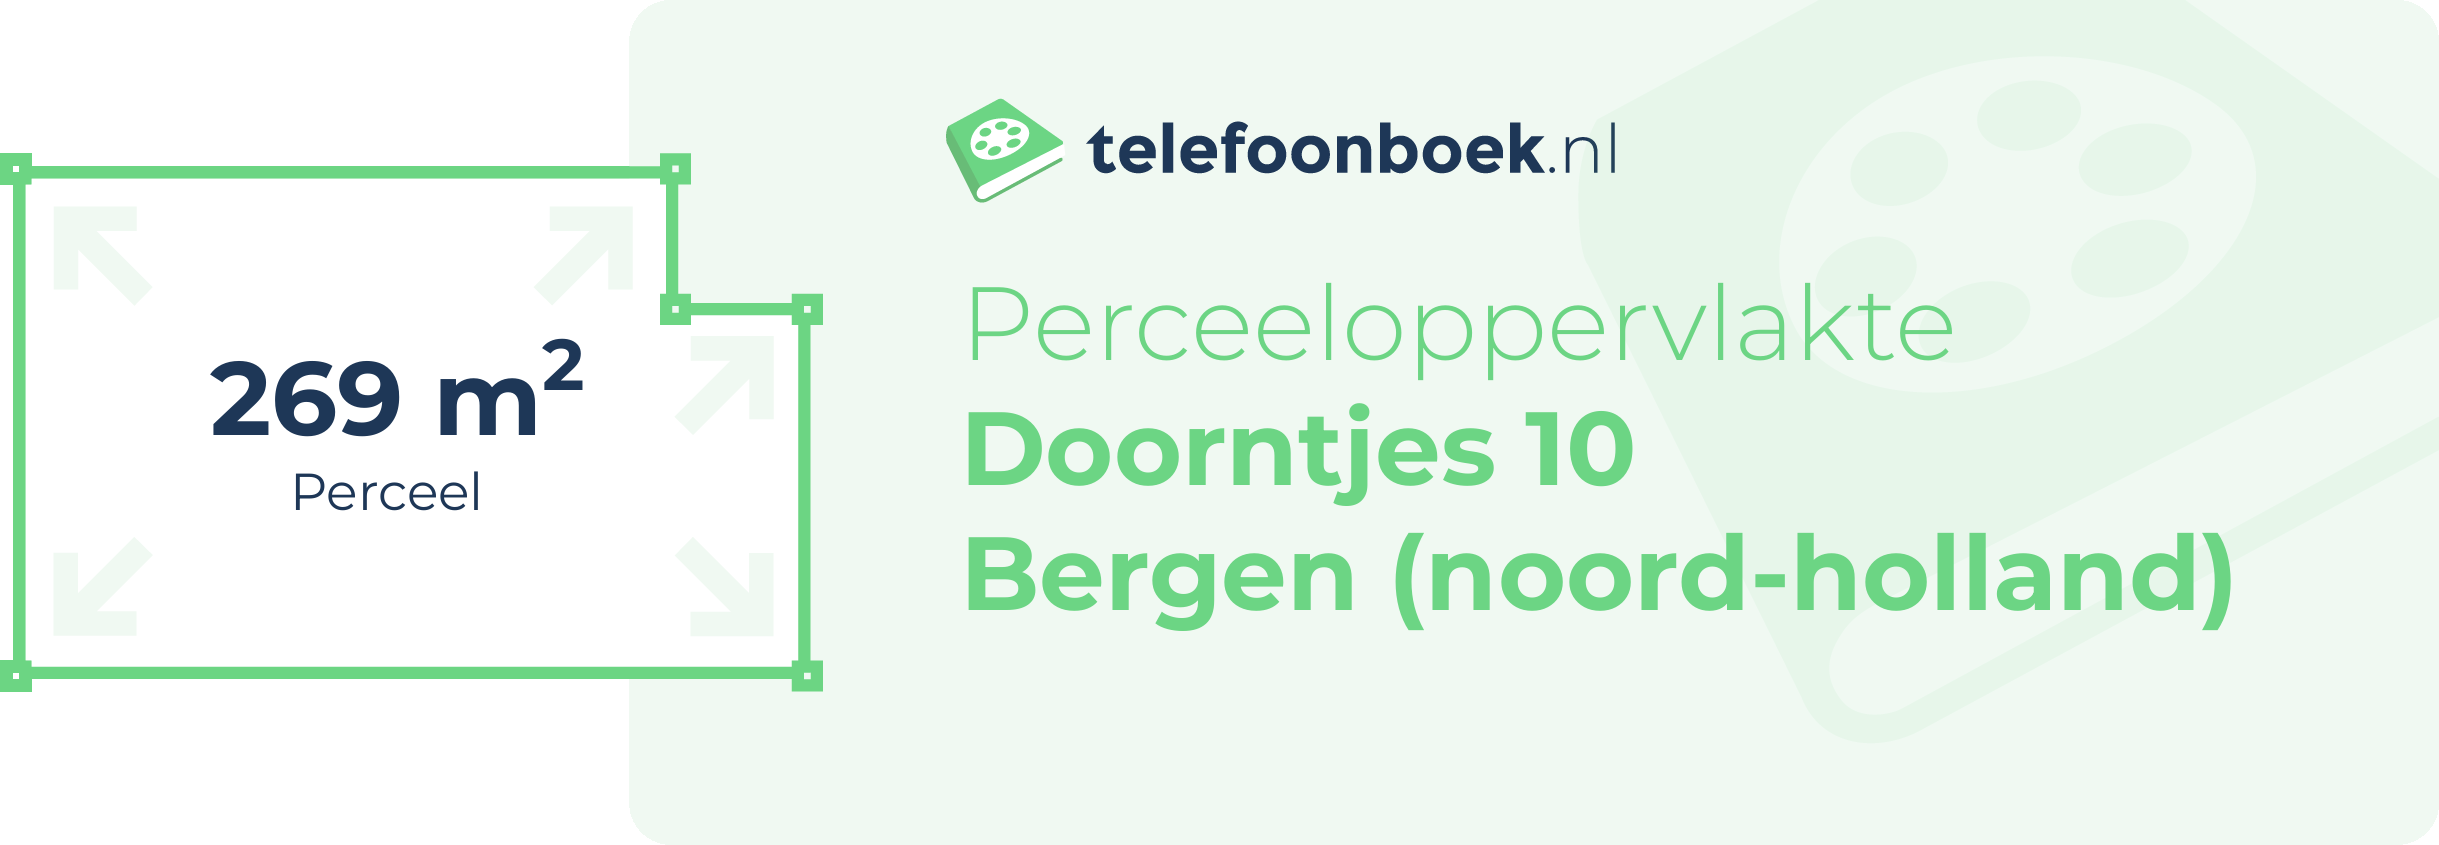 Perceeloppervlakte Doorntjes 10 Bergen (Noord-Holland)